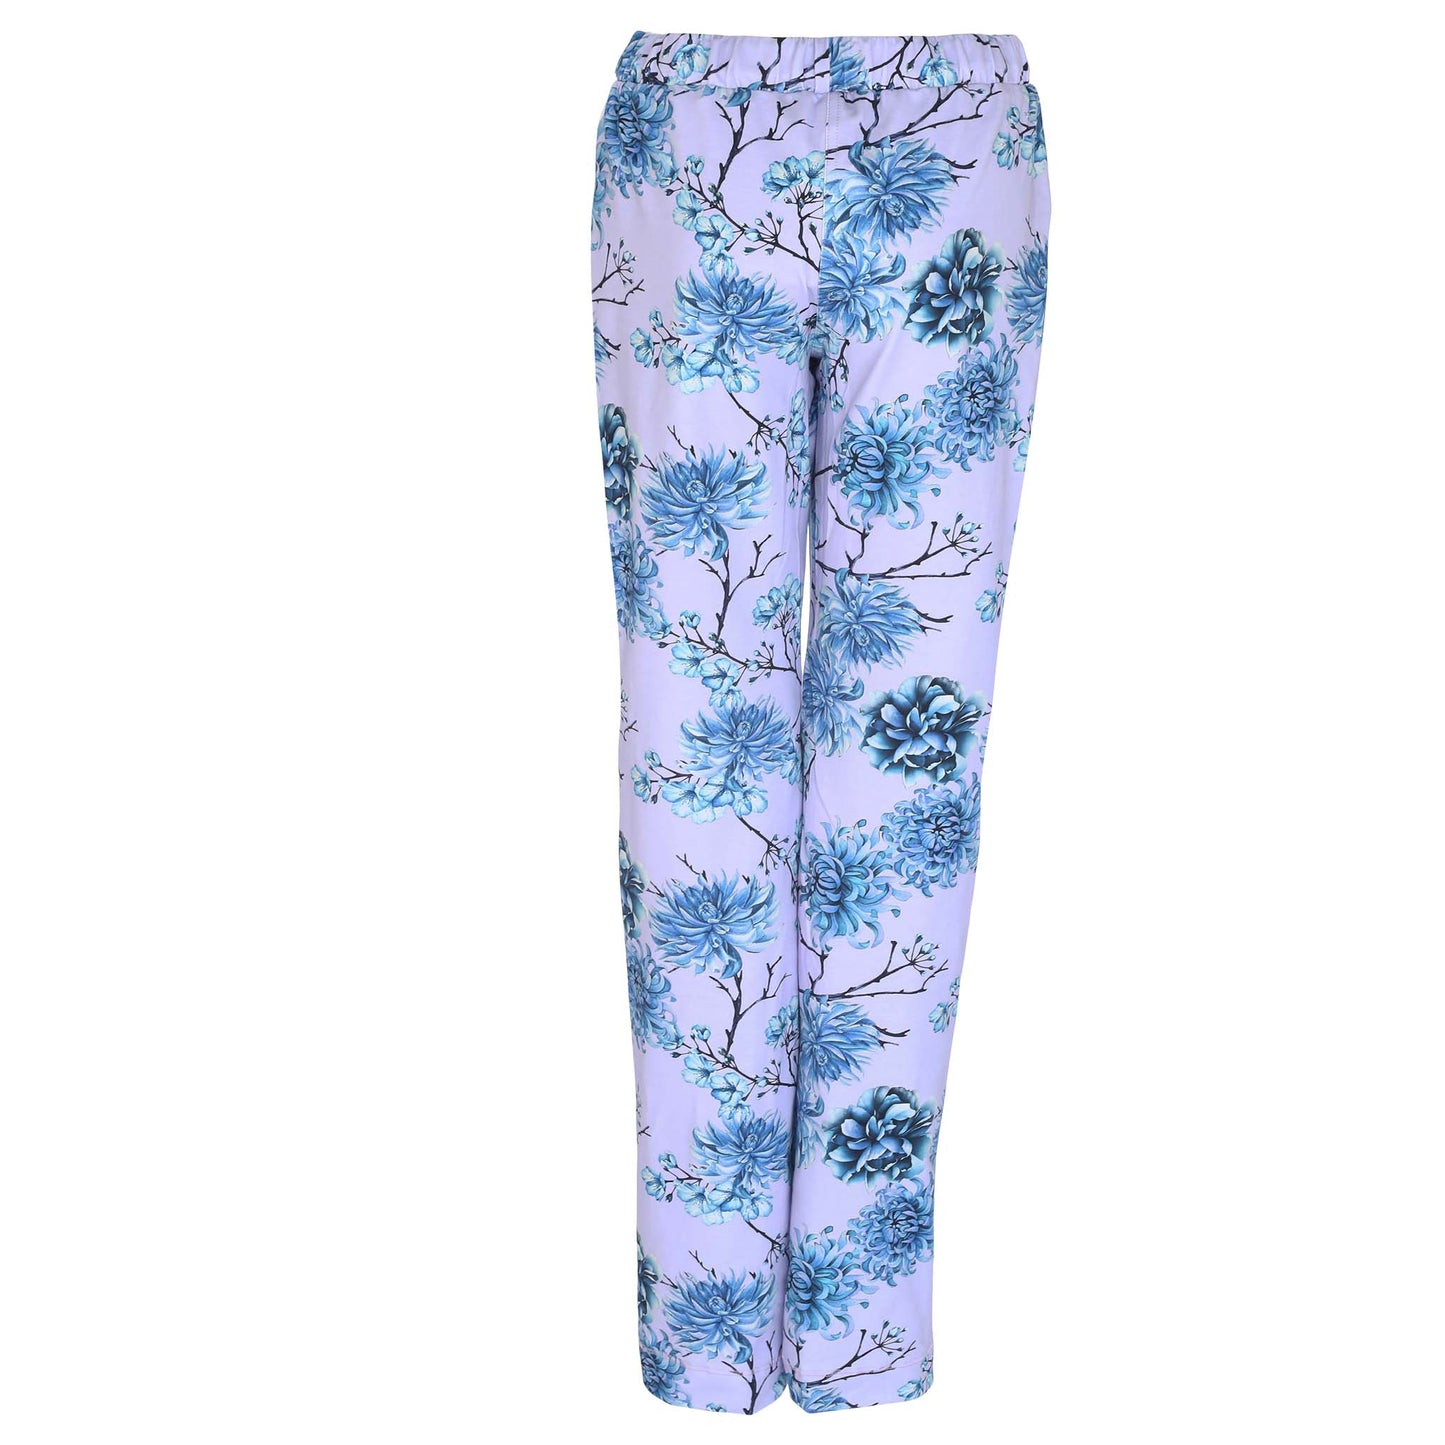 kleding lange vrouwen longlady pyjamabroek pauly bloem